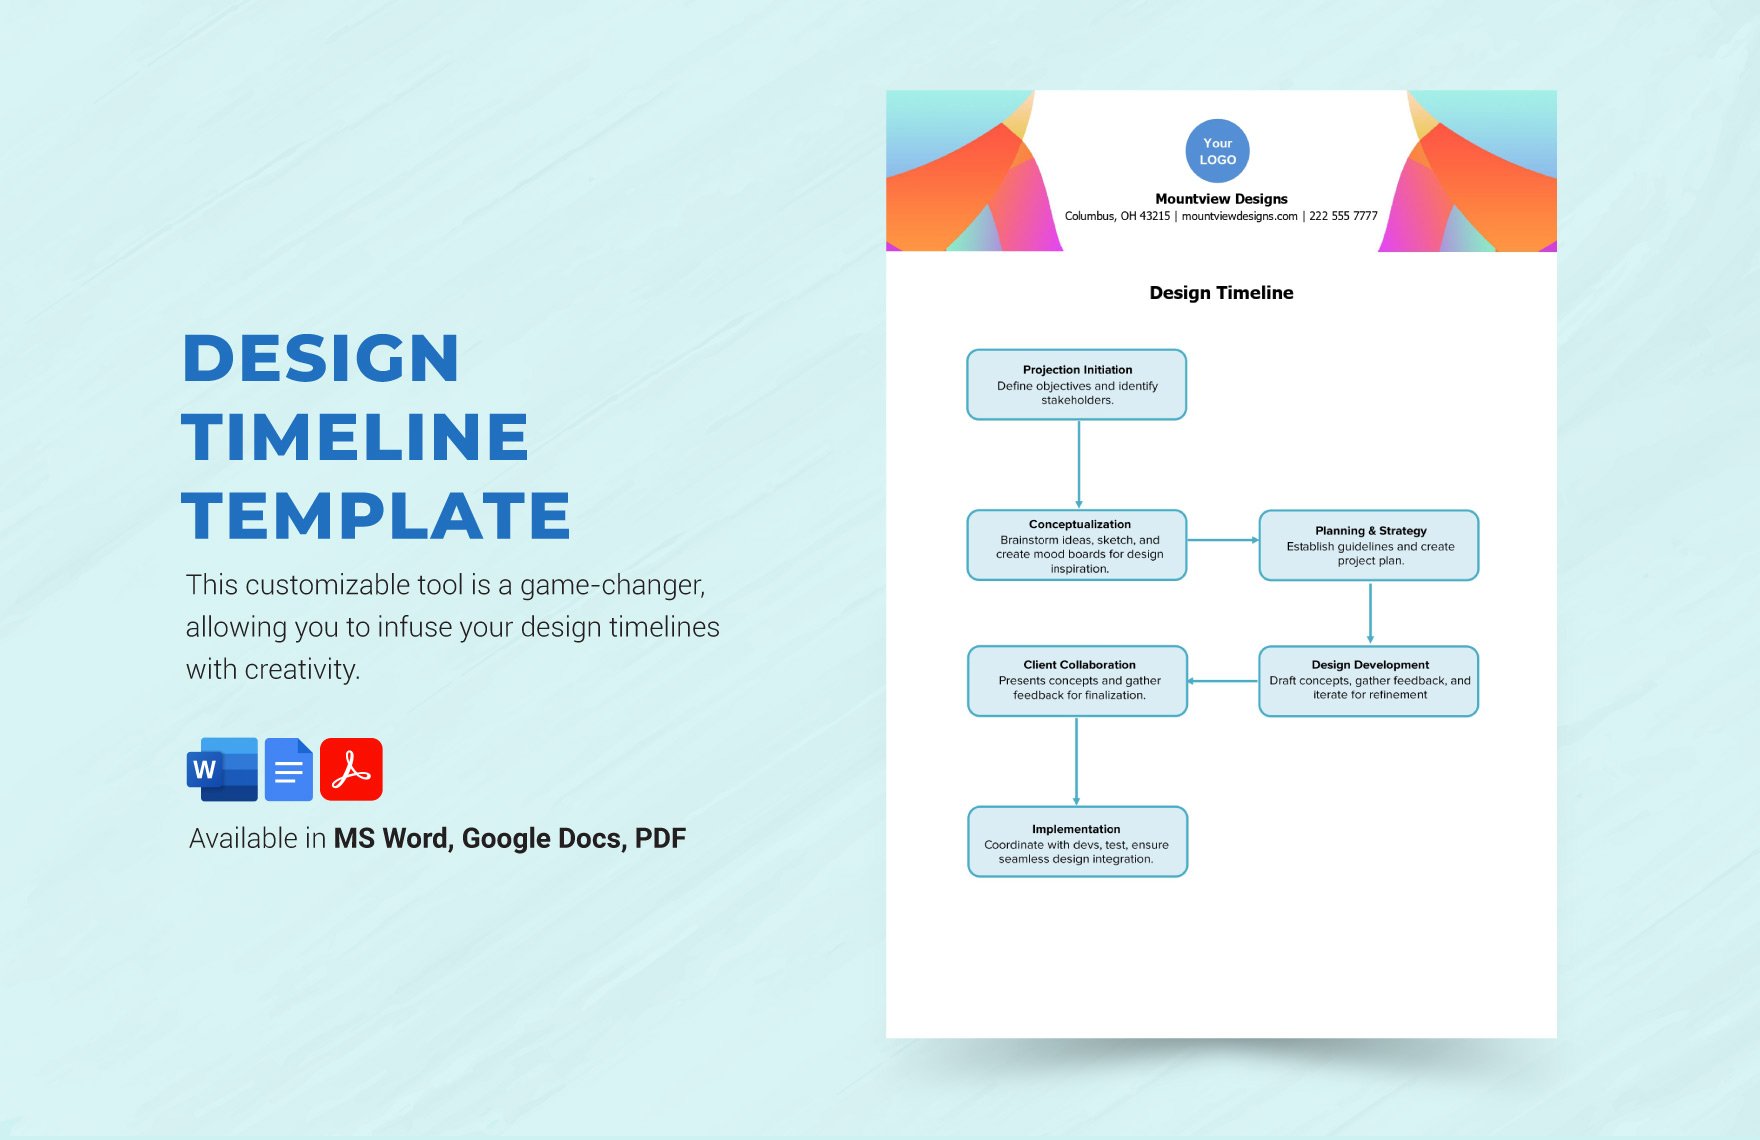 Design Timeline Template in Word, Google Docs, PDF